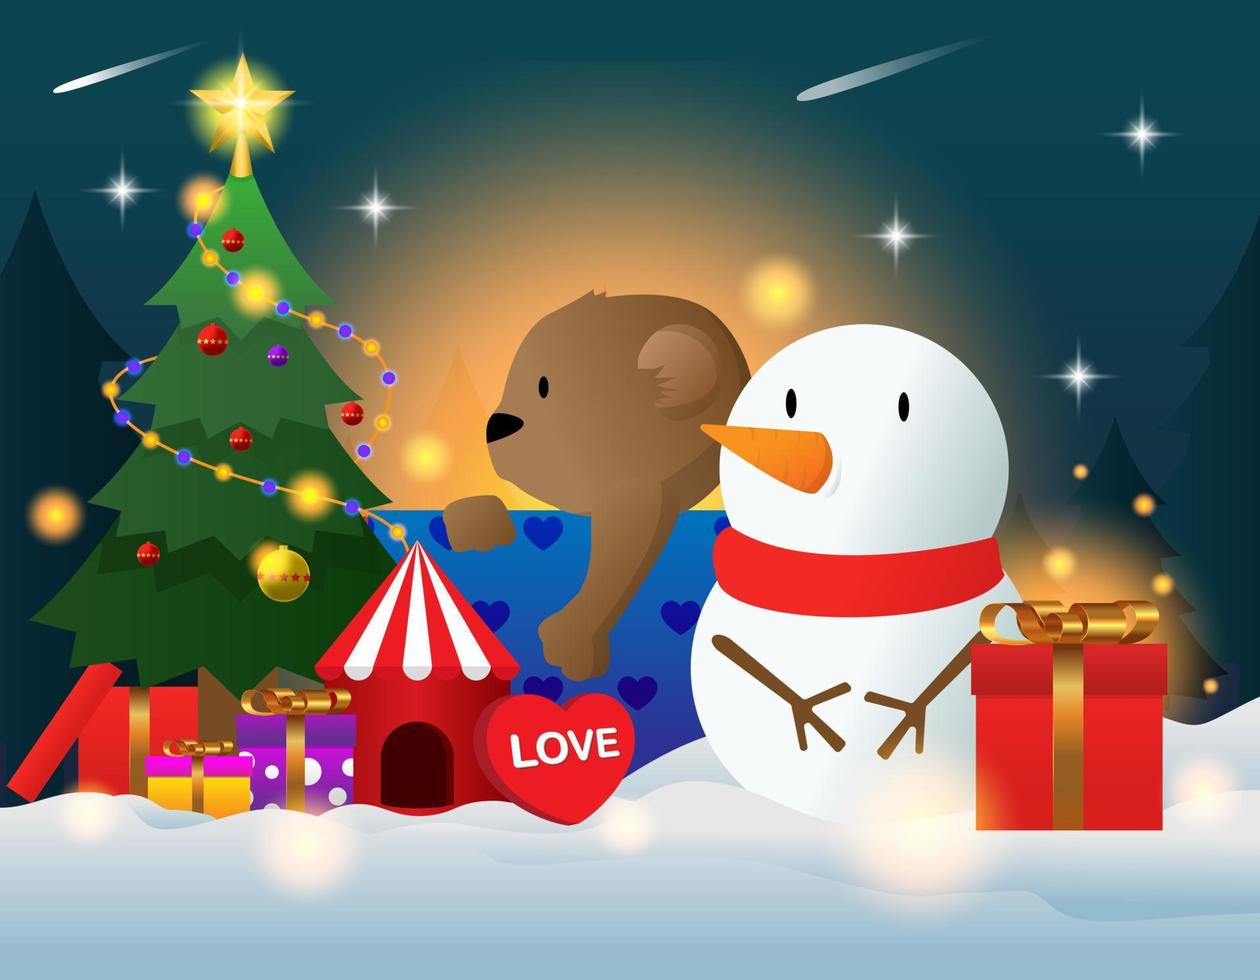 cadeautjes onder de kerstboom gelegd. kerstcadeau in de sneeuw. diverse geschenken zoals teddyberen, geschenkdozen en snoepjes. vector